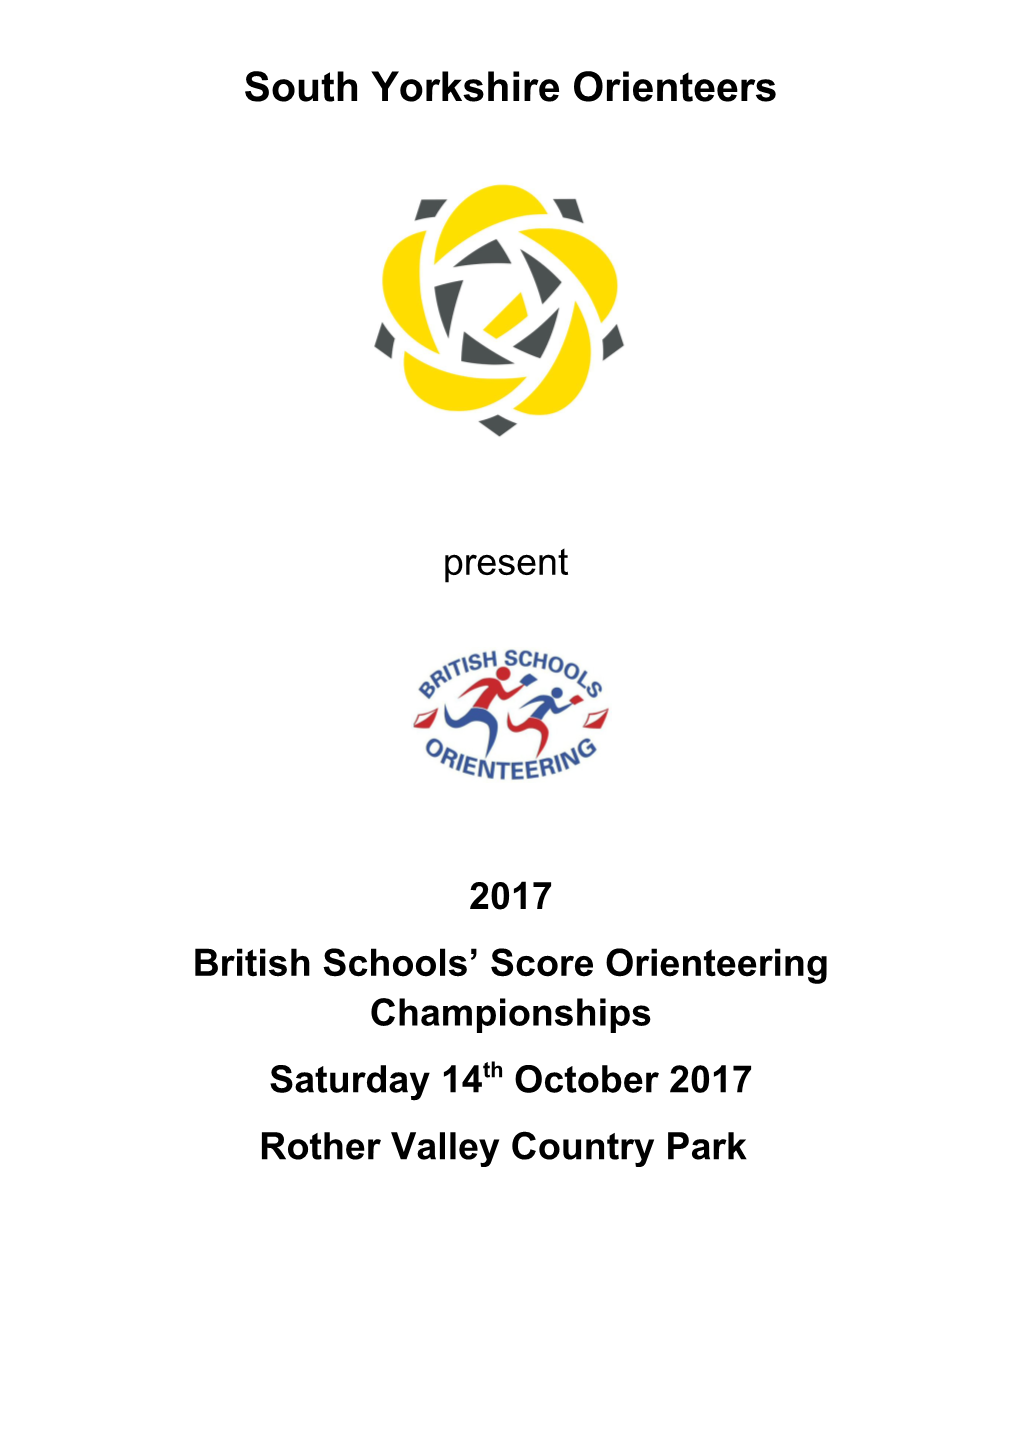 British Schools Scoreorienteeringchampionships